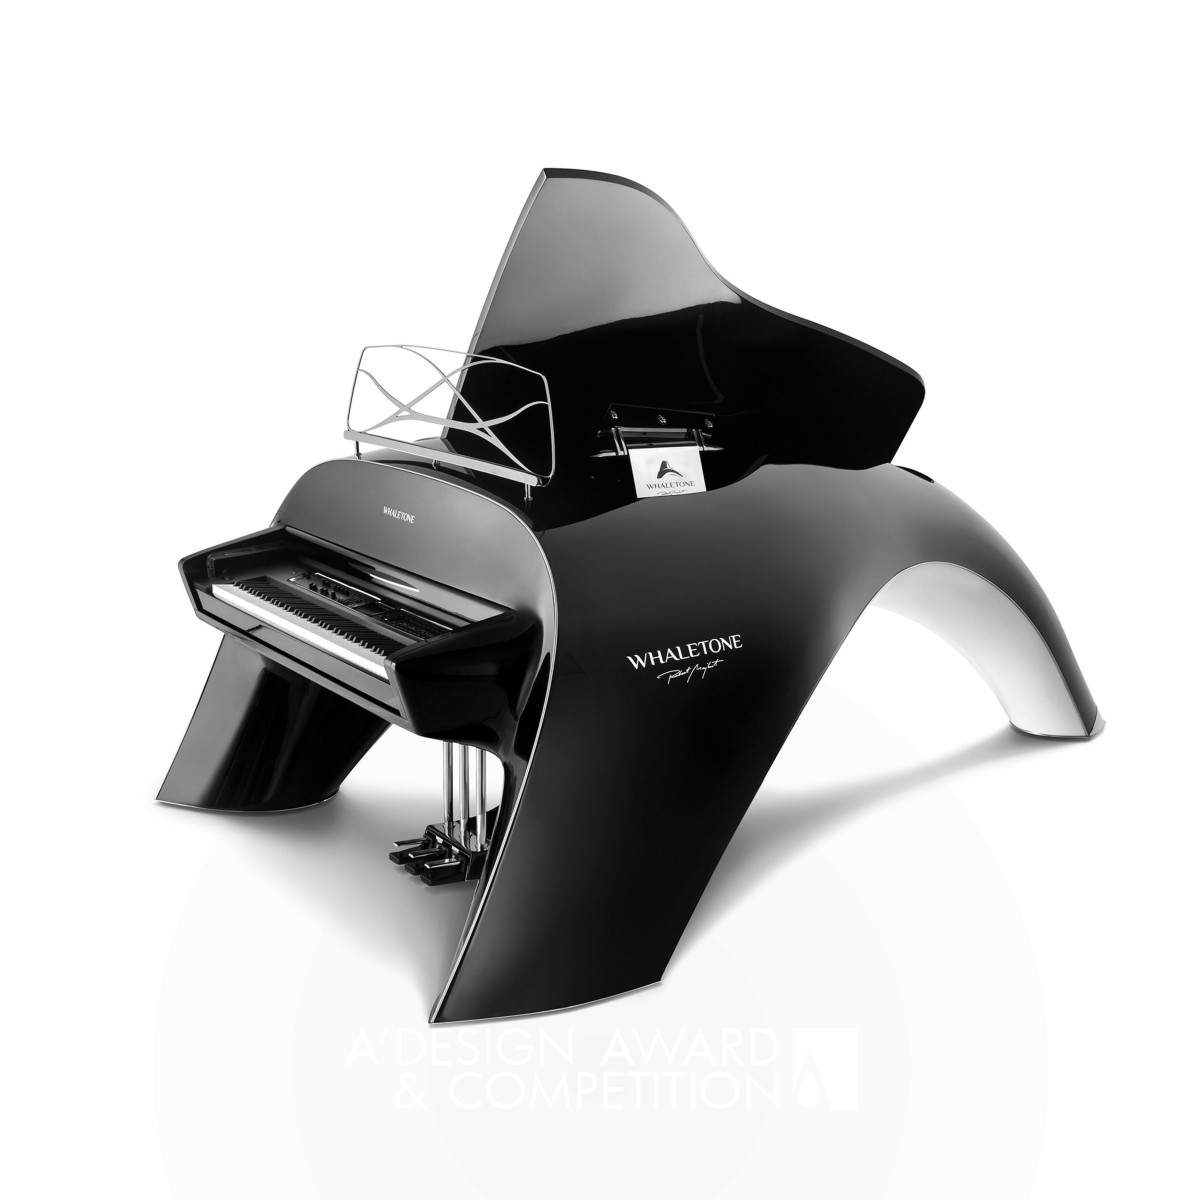 Whaletone Grand Hybrid Piano  Musical Instrument by Robert Majkut